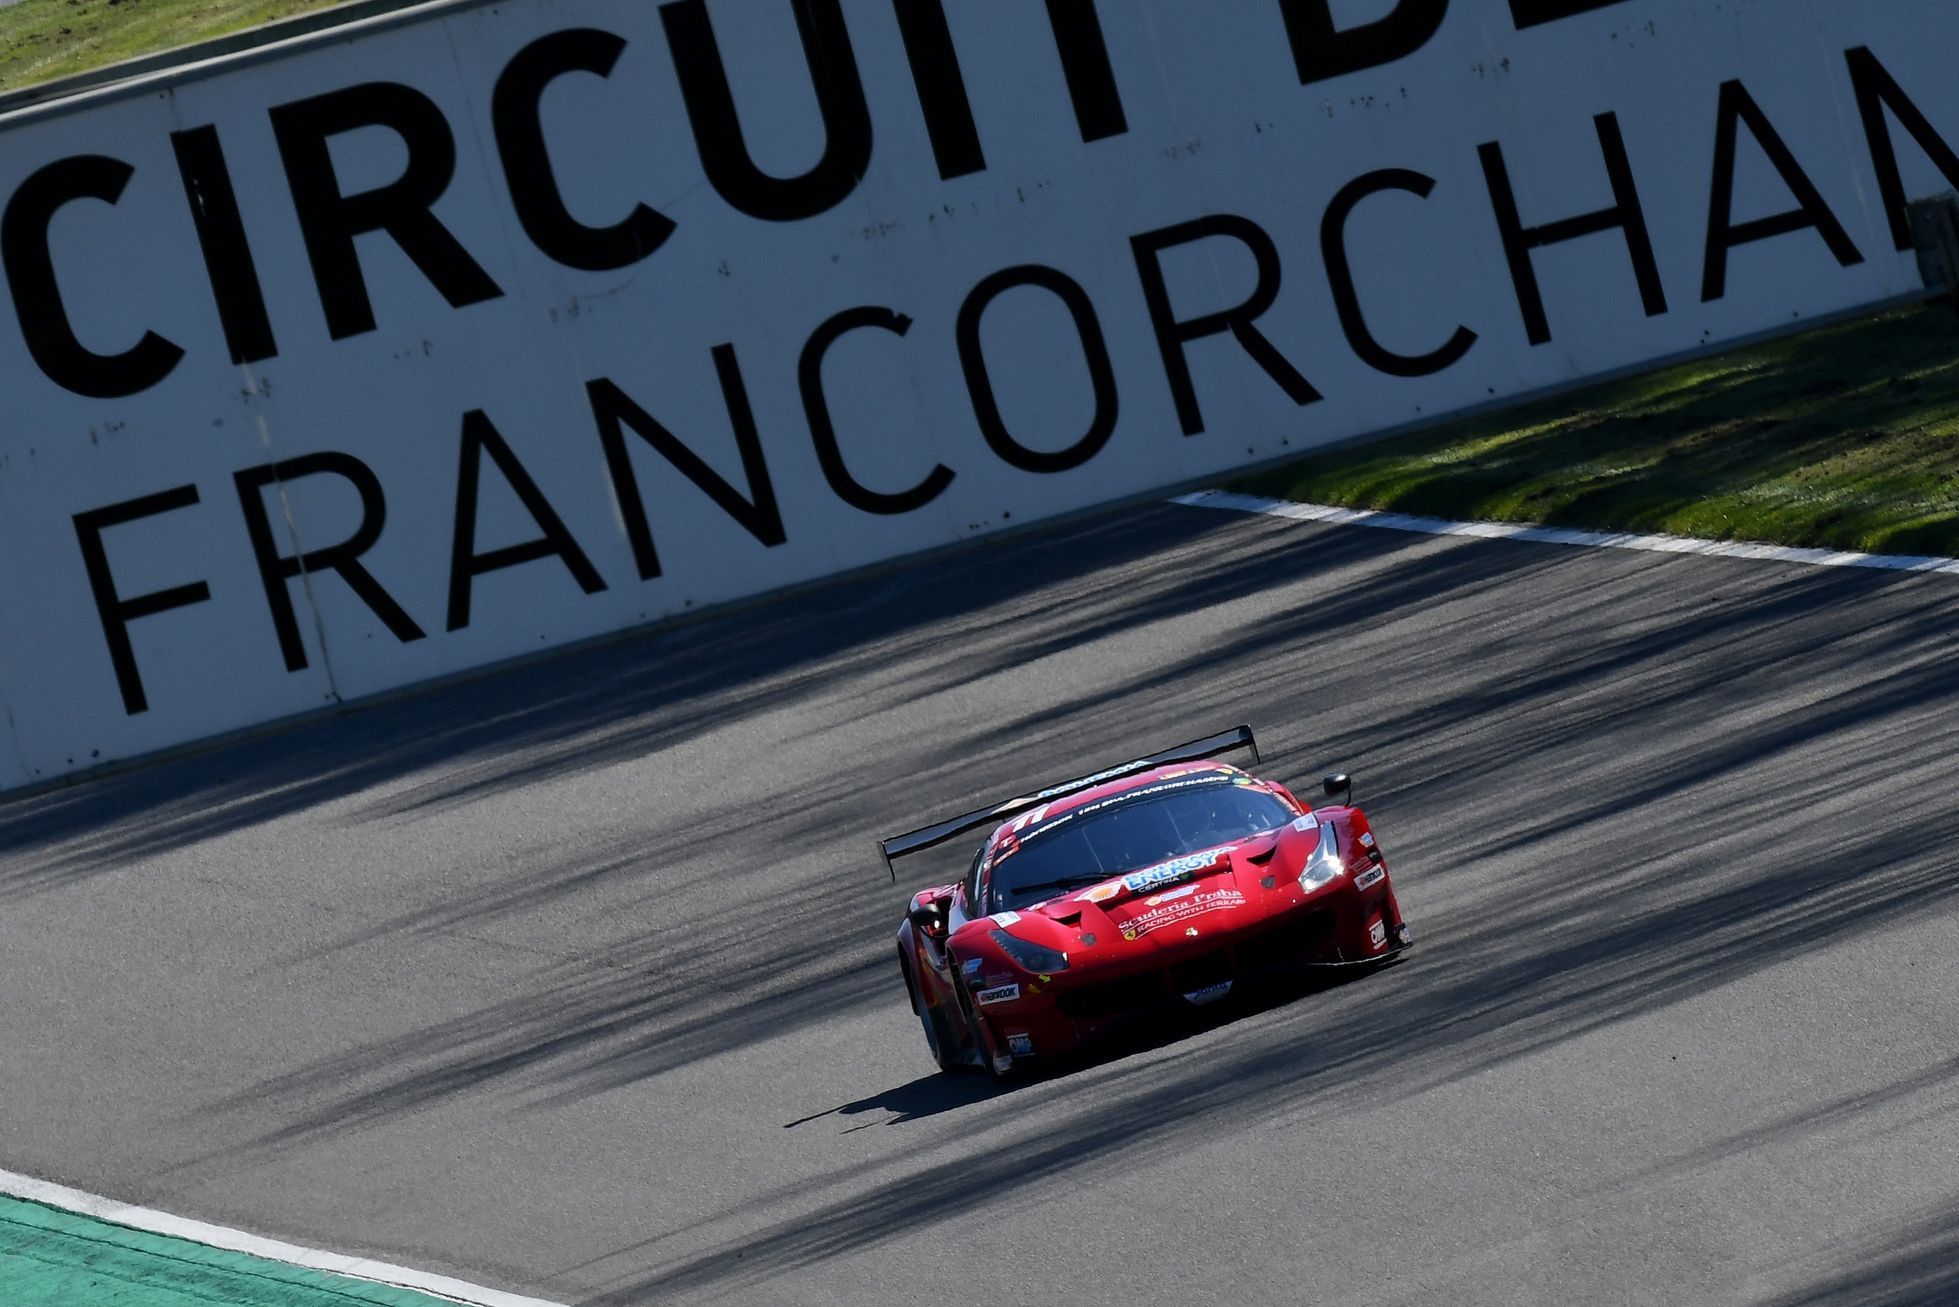 Ferrari týmu Scuderia Praha při dvanáctihodinovce ve Spa-Francorchamps